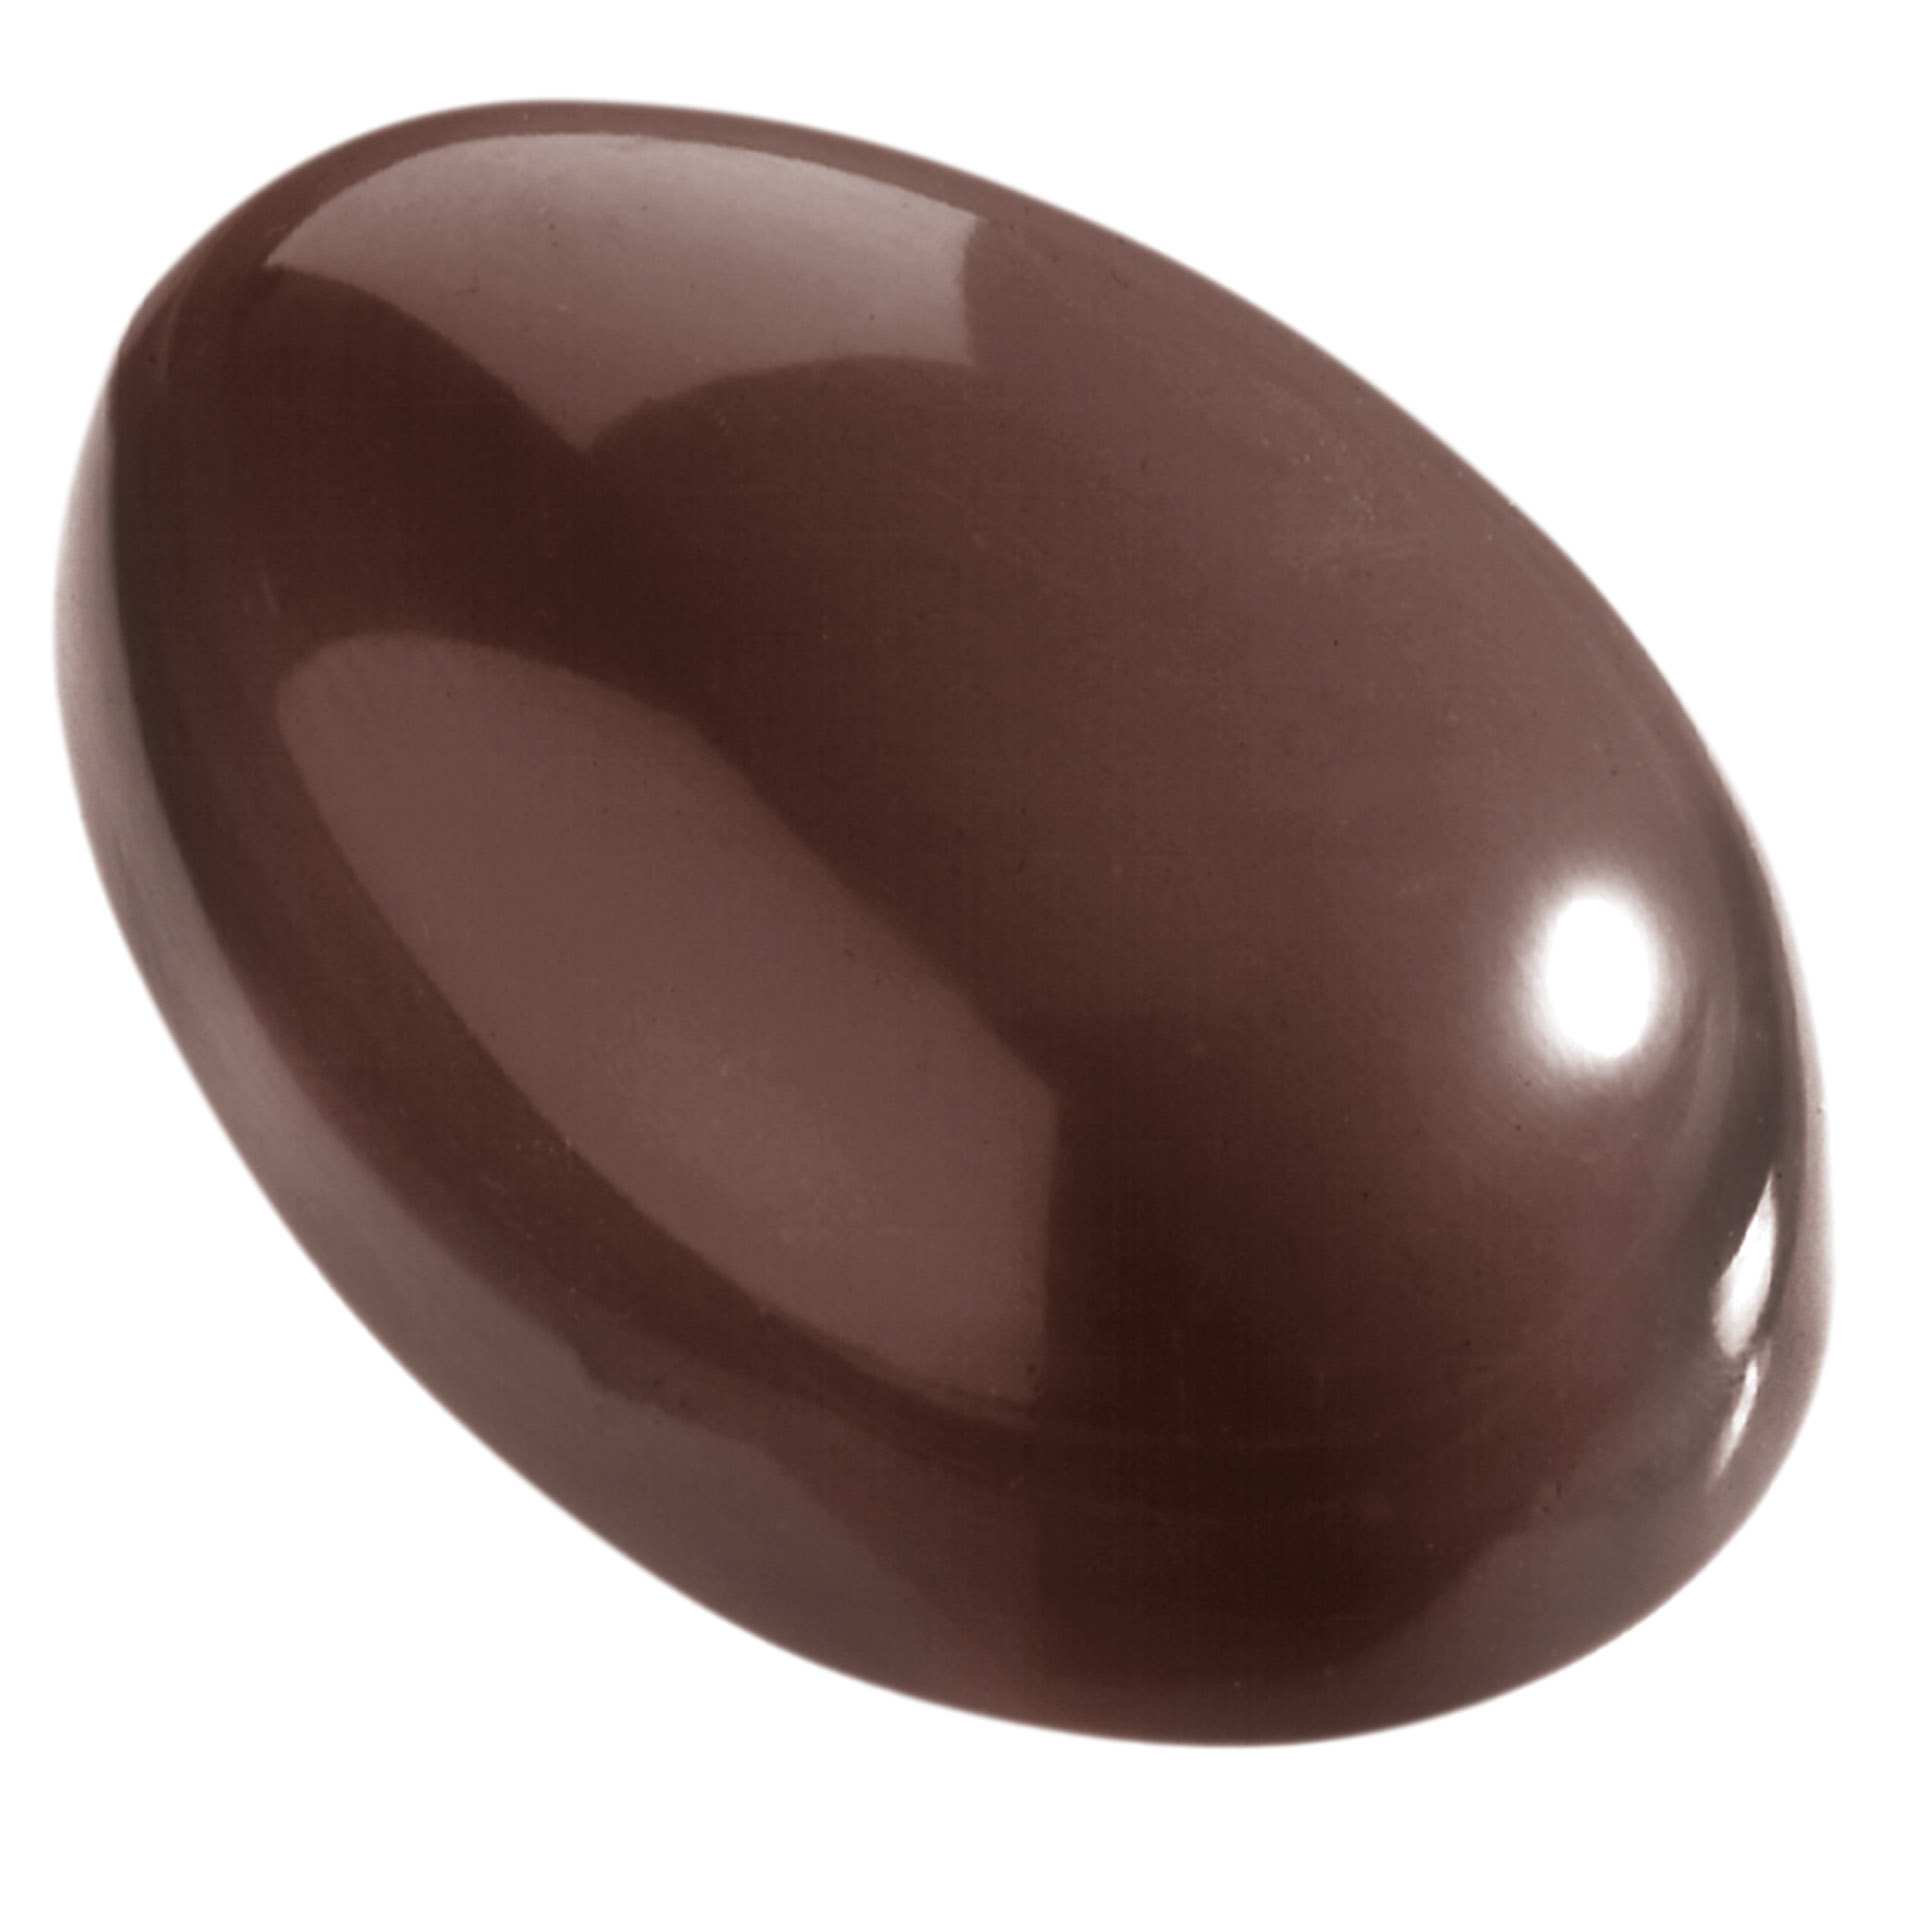 Schokoladen-Form - Ei glatt - Abm. 27,5 x 13,5 x 3,5 cm - Polycarbonat - 421254-C